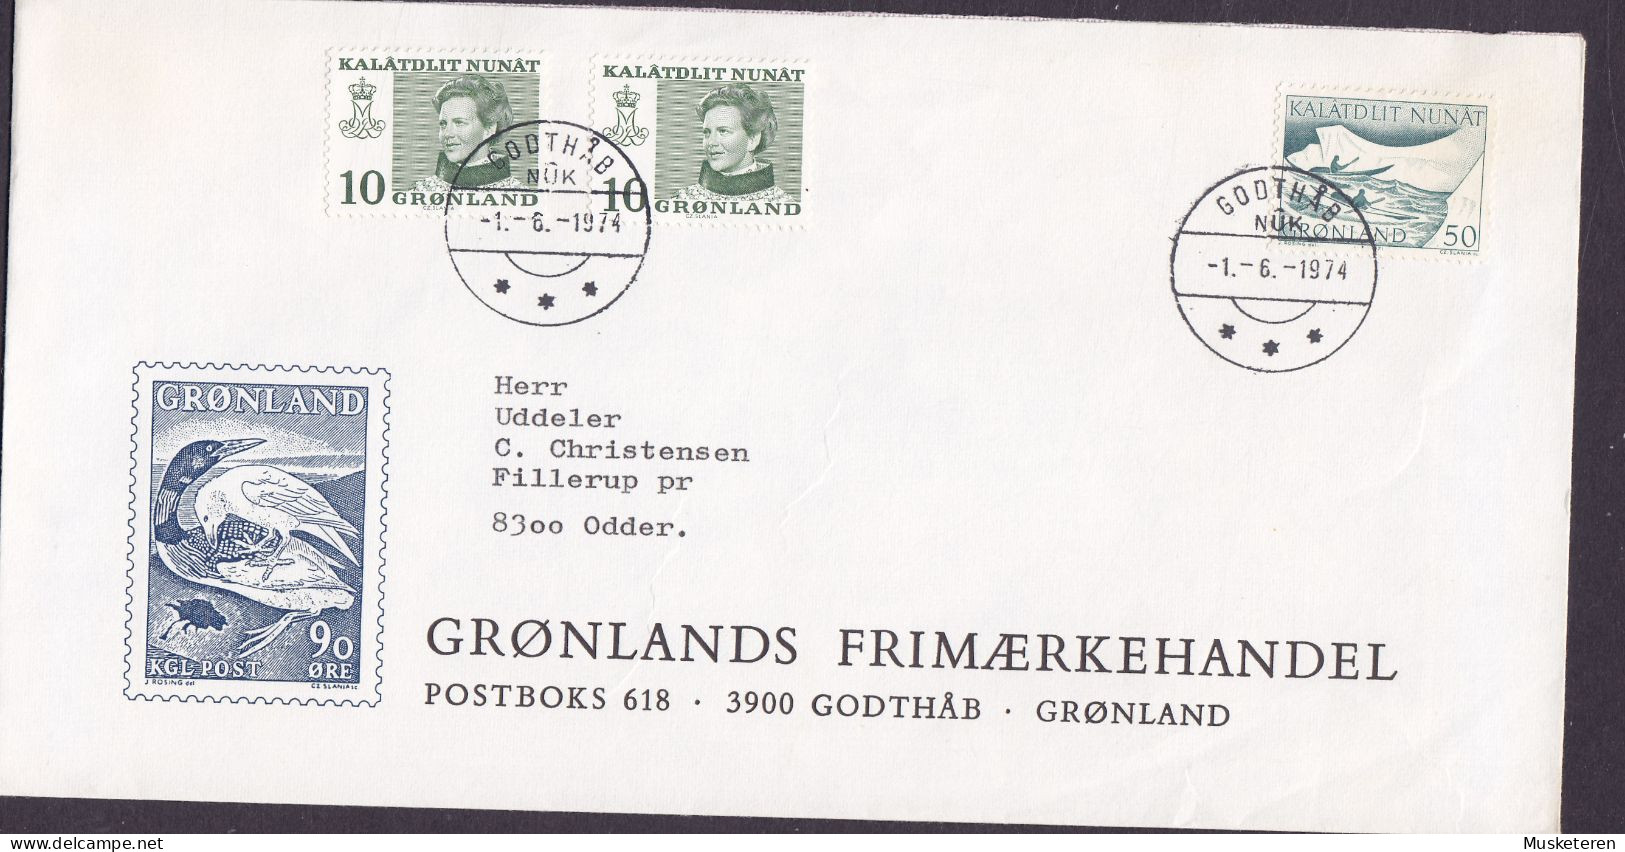 Greenland GRØNLANDS FRIMÆRKEHANDEL Cachet GODTHÅB 1974 Cover Brief ODDER Denmark Kajak Post (Cz. Slania) - Briefe U. Dokumente